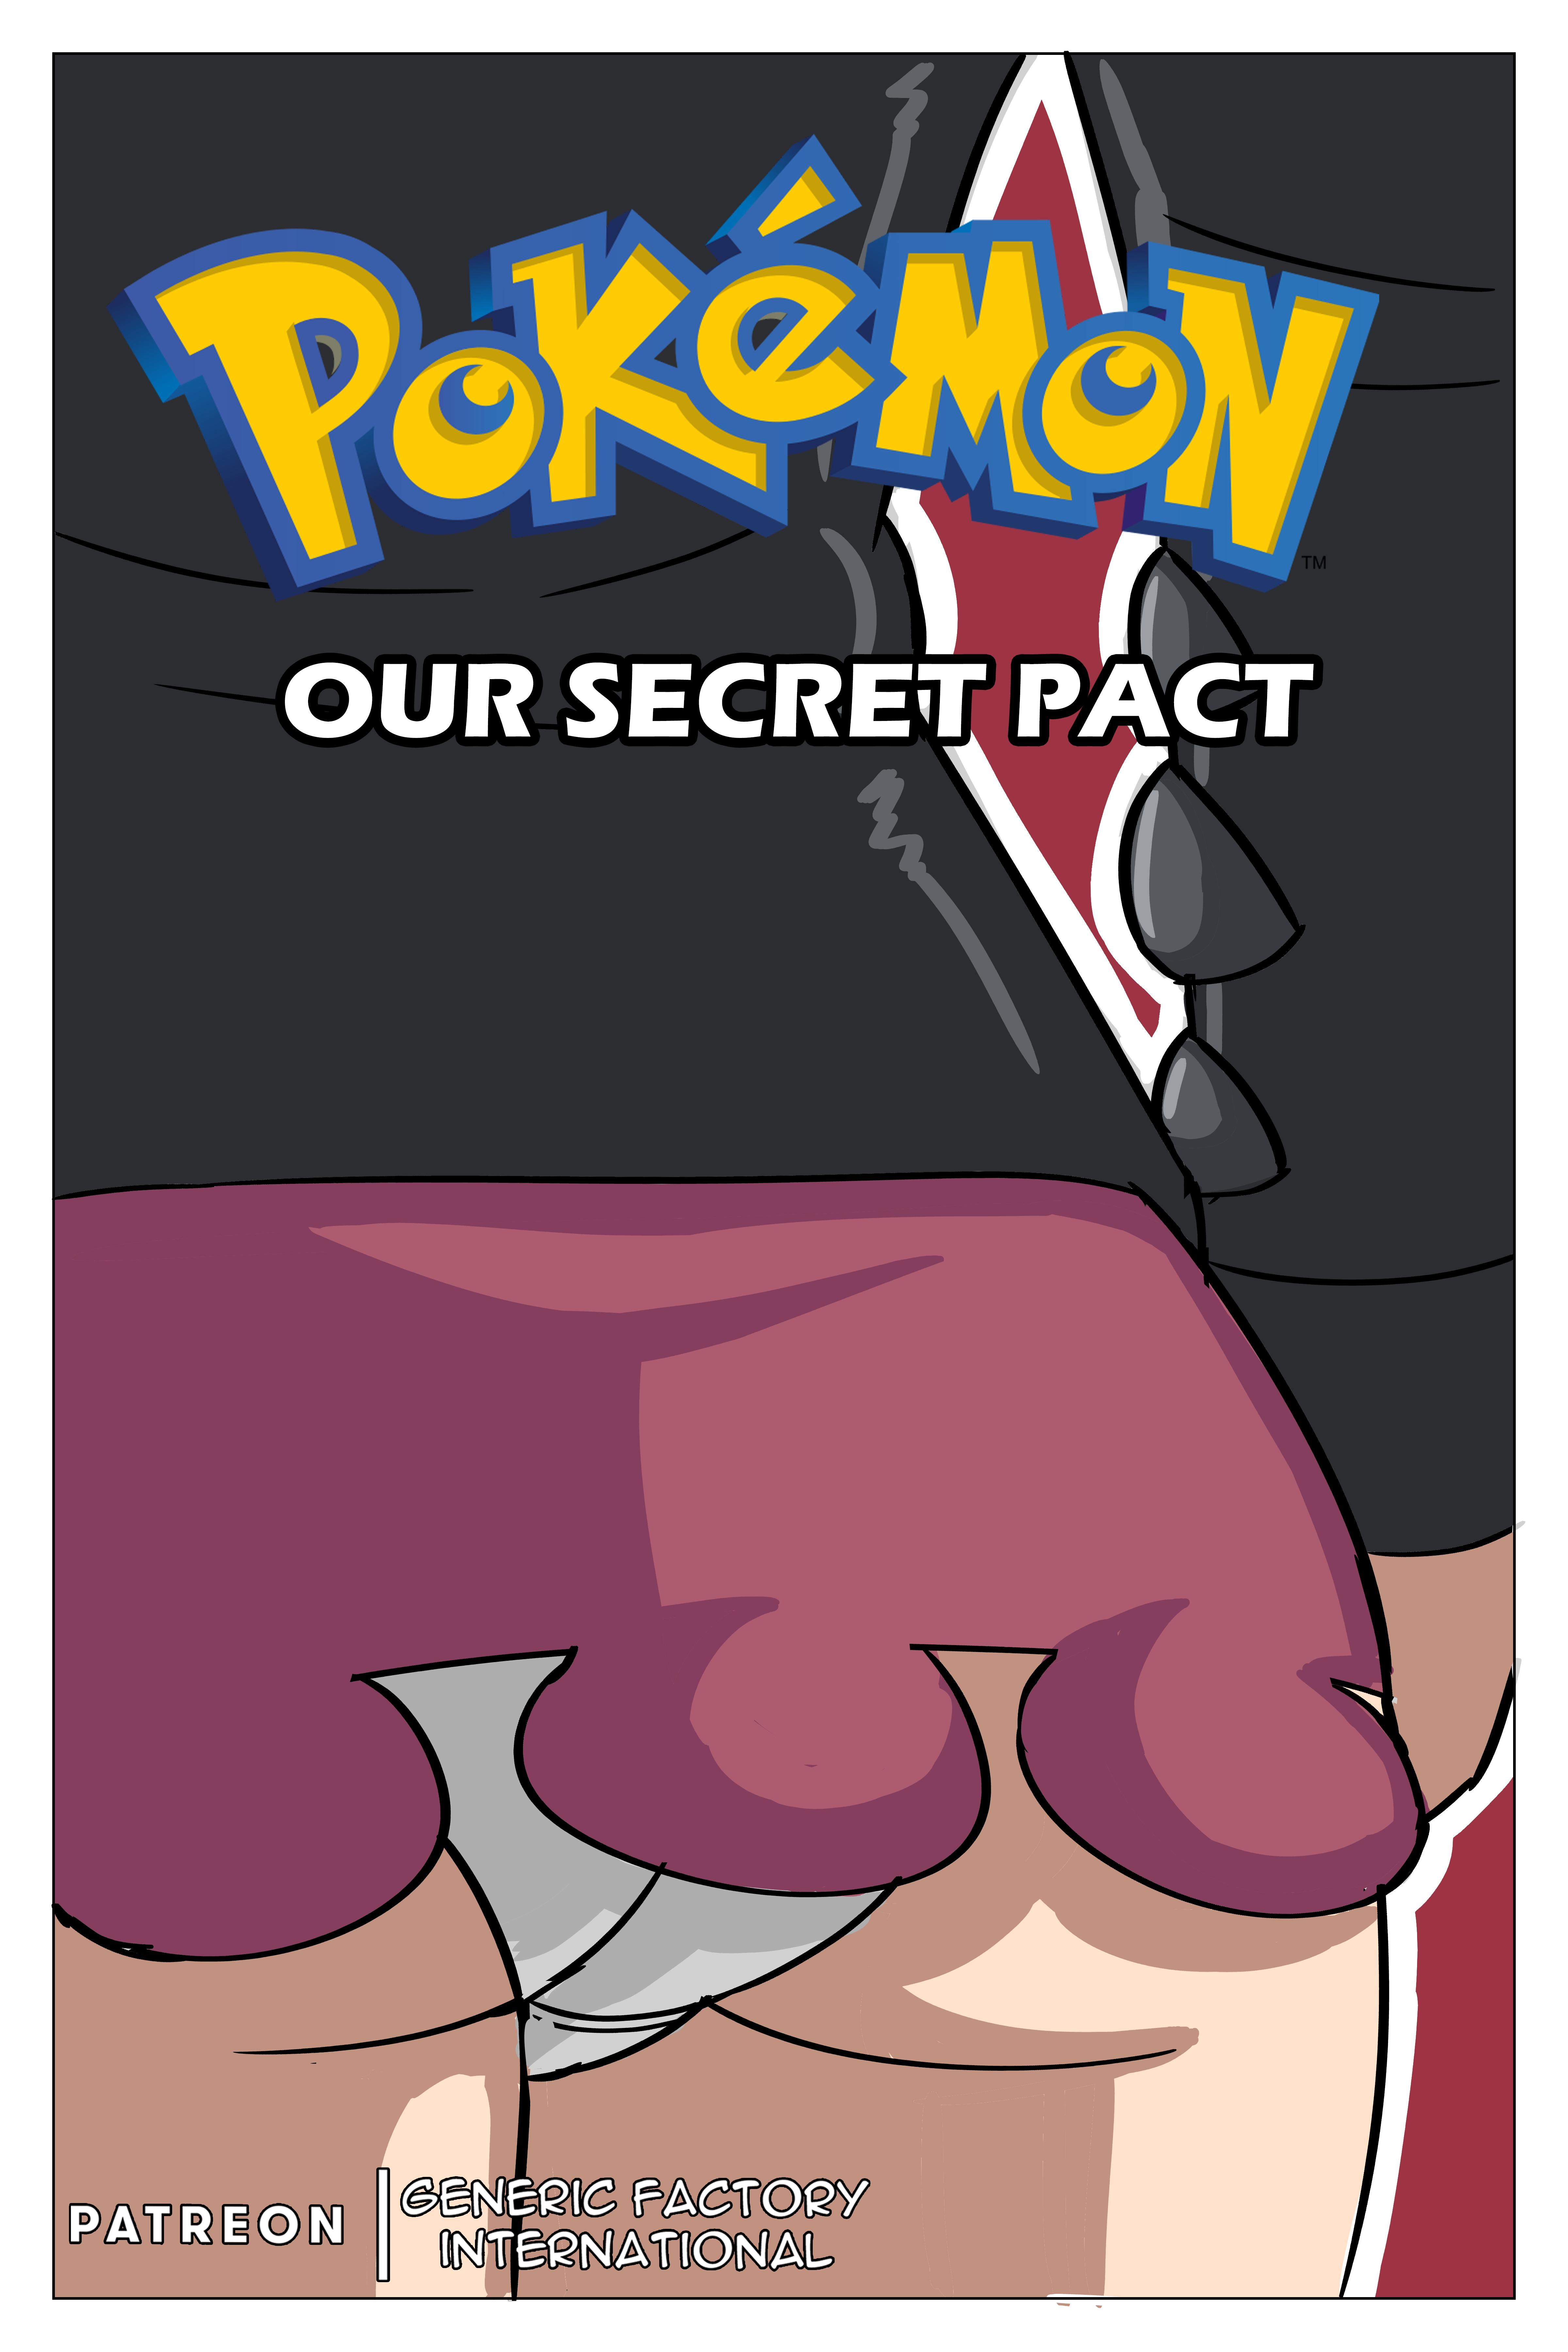 SureFap xxx porno Pokemon - [Generic Factory International] - Our Secret Pact